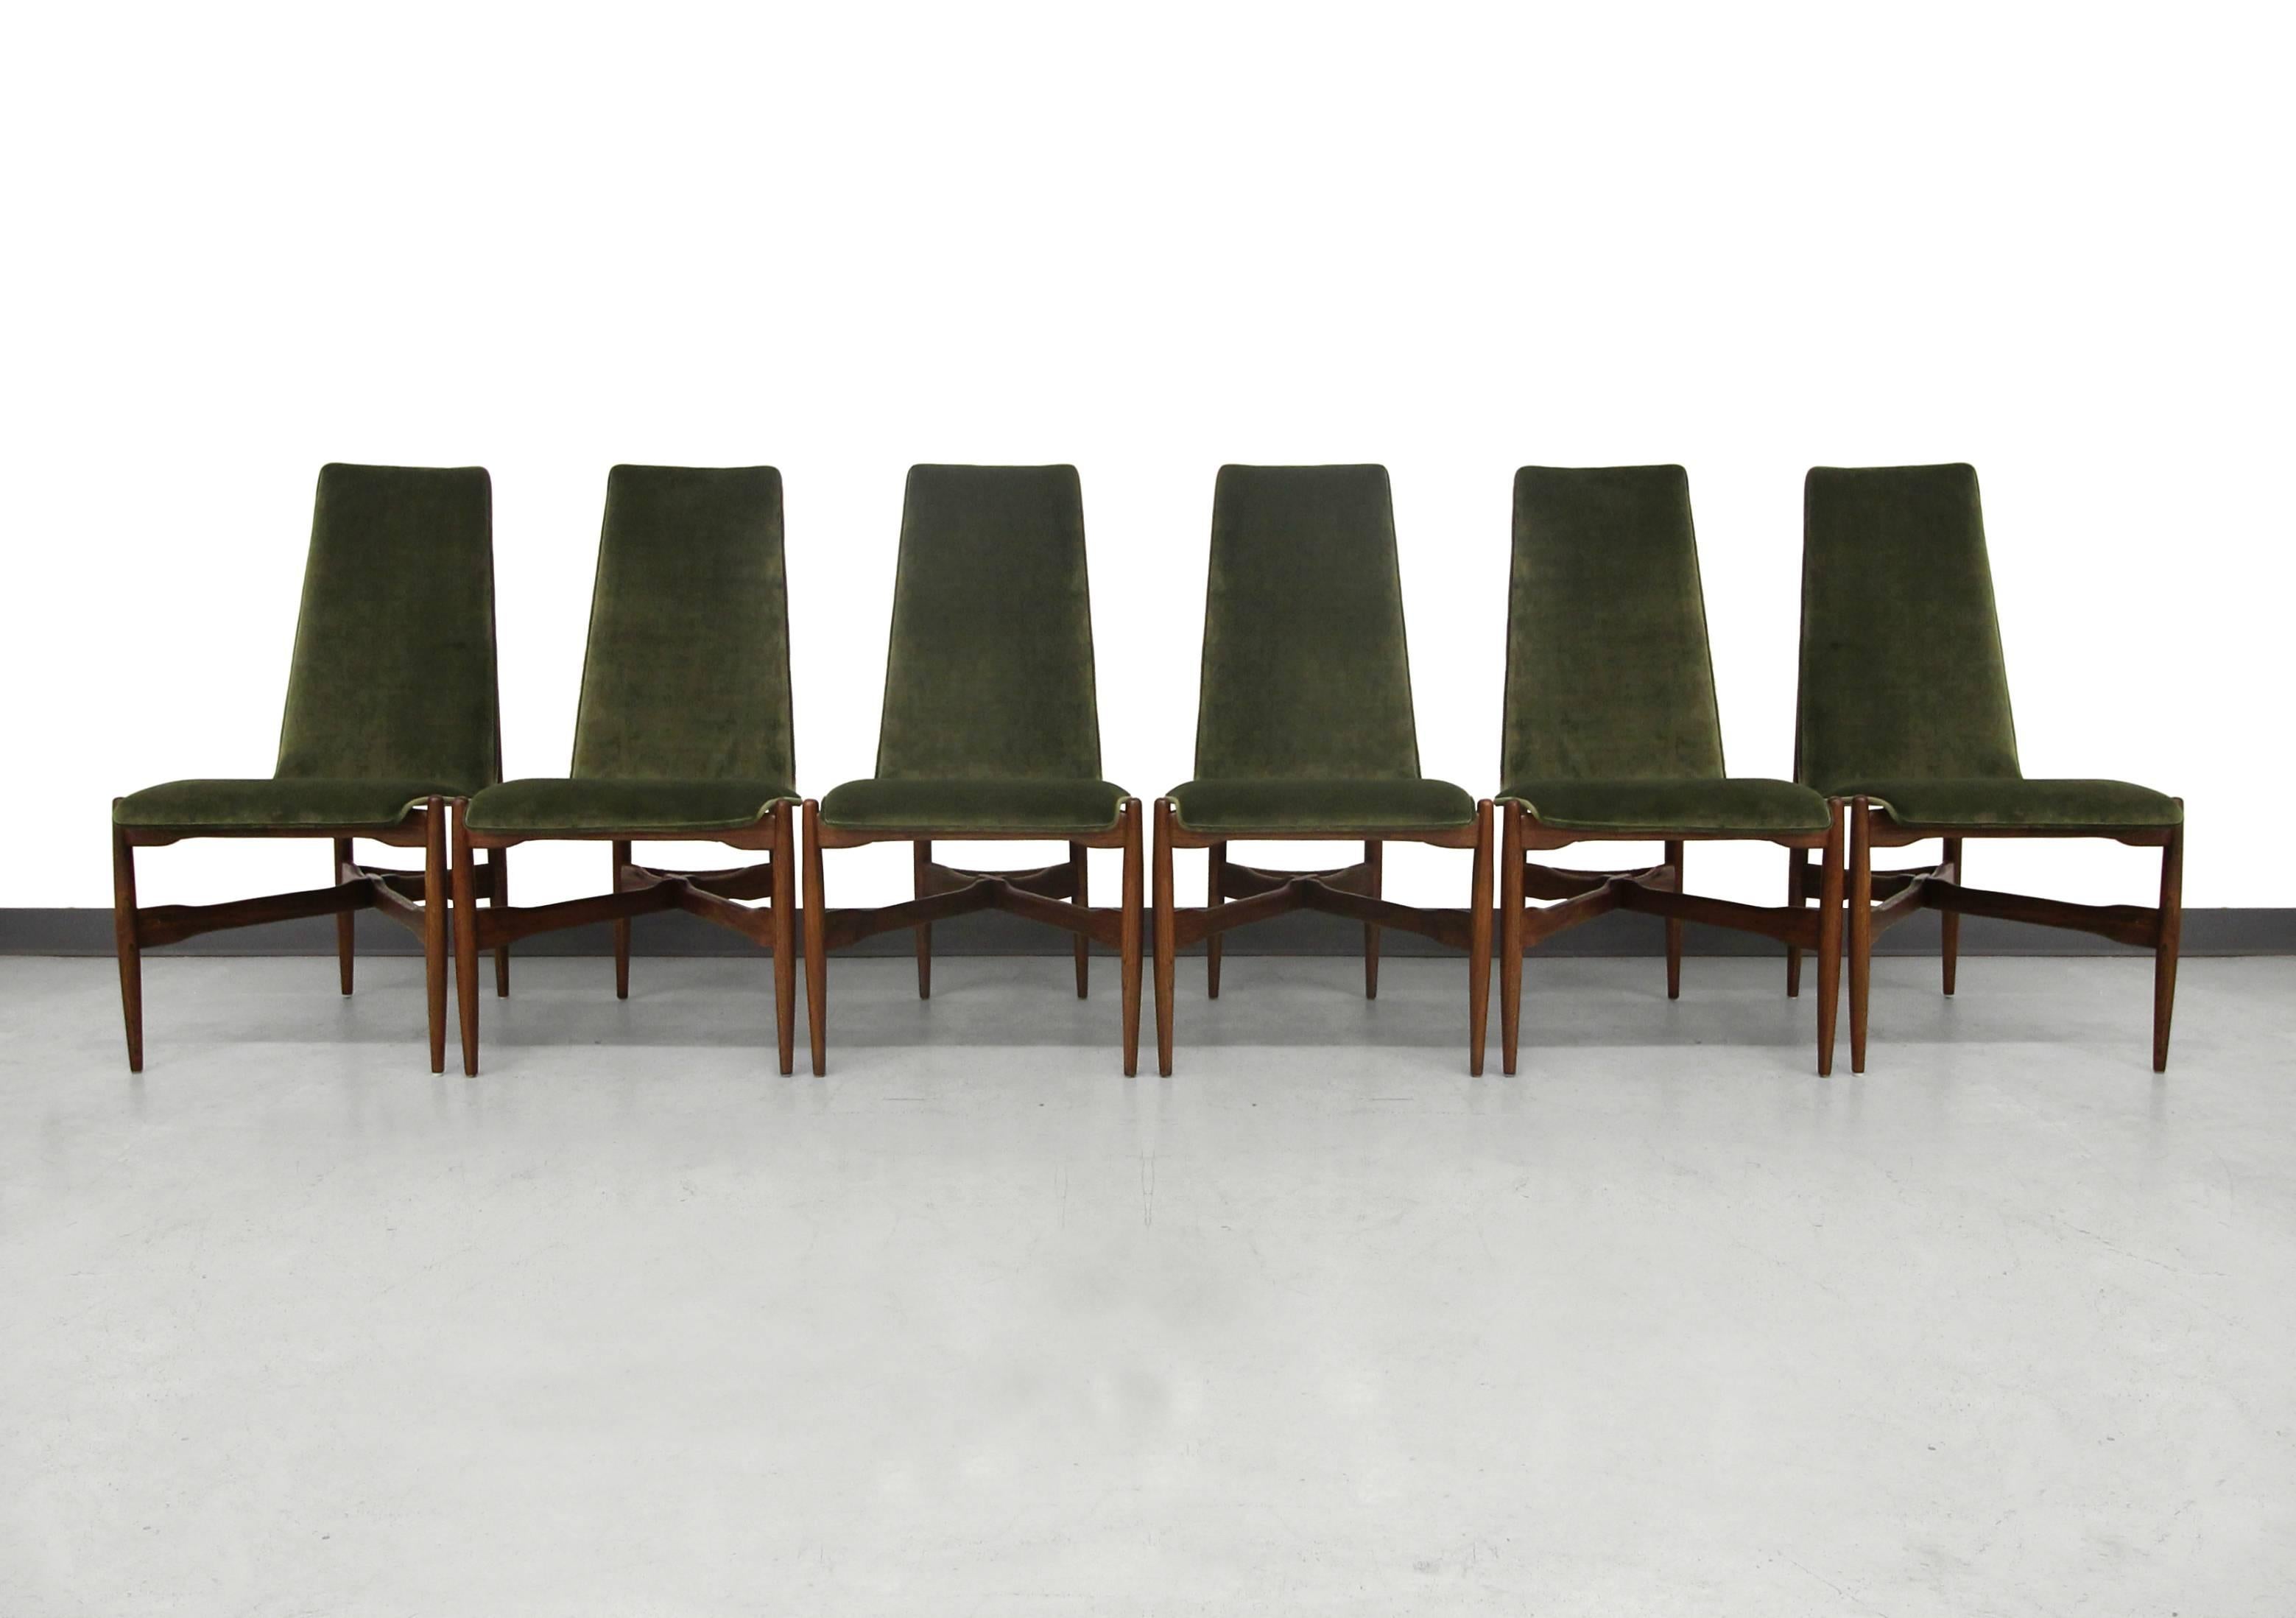 kodawood chairs